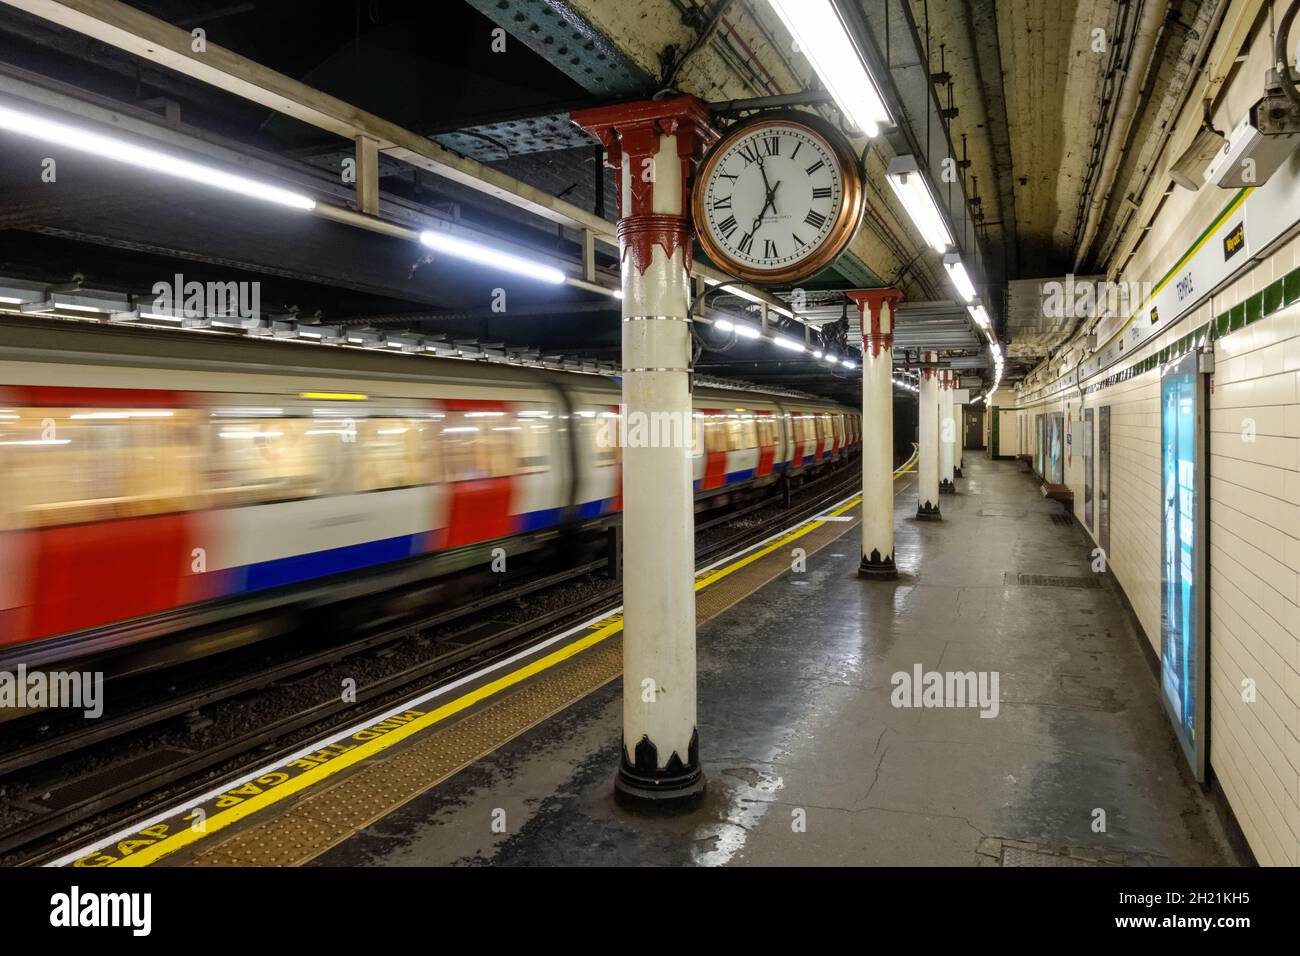 Station de métro London Temple, Londres, Angleterre Royaume-Uni Banque D'Images